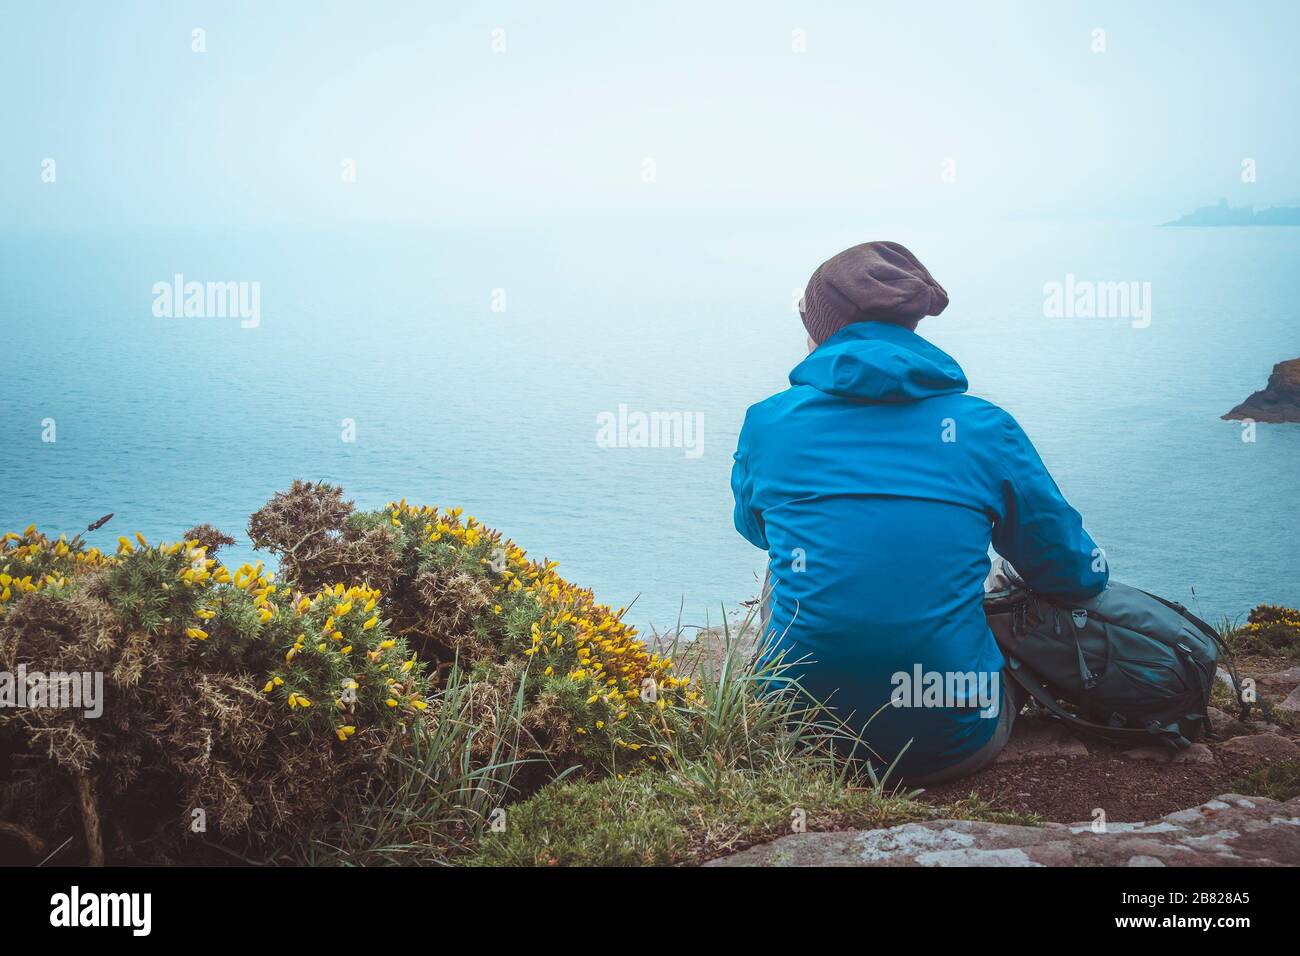 Giovane uomo con zaino, impermeabile e cappello lanoso seduto sul bordo di una scogliera costiera guardando il mare in una giornata piovosa e maledetta. Immagine con toni esterni w Foto Stock